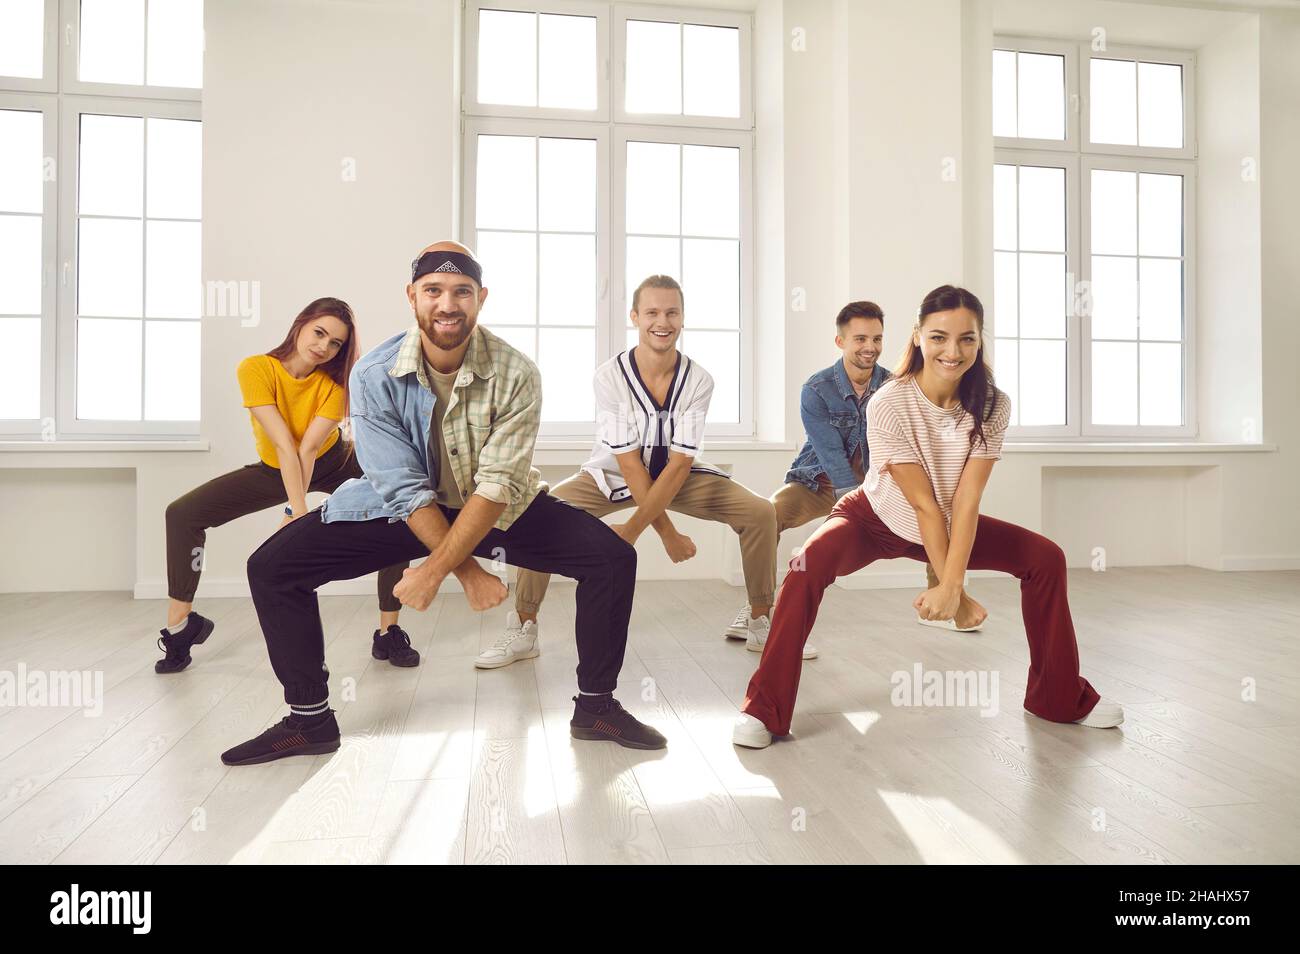 Un groupe de jeunes danseurs souriants et heureux répète une nouvelle danse dans leur studio moderne Banque D'Images